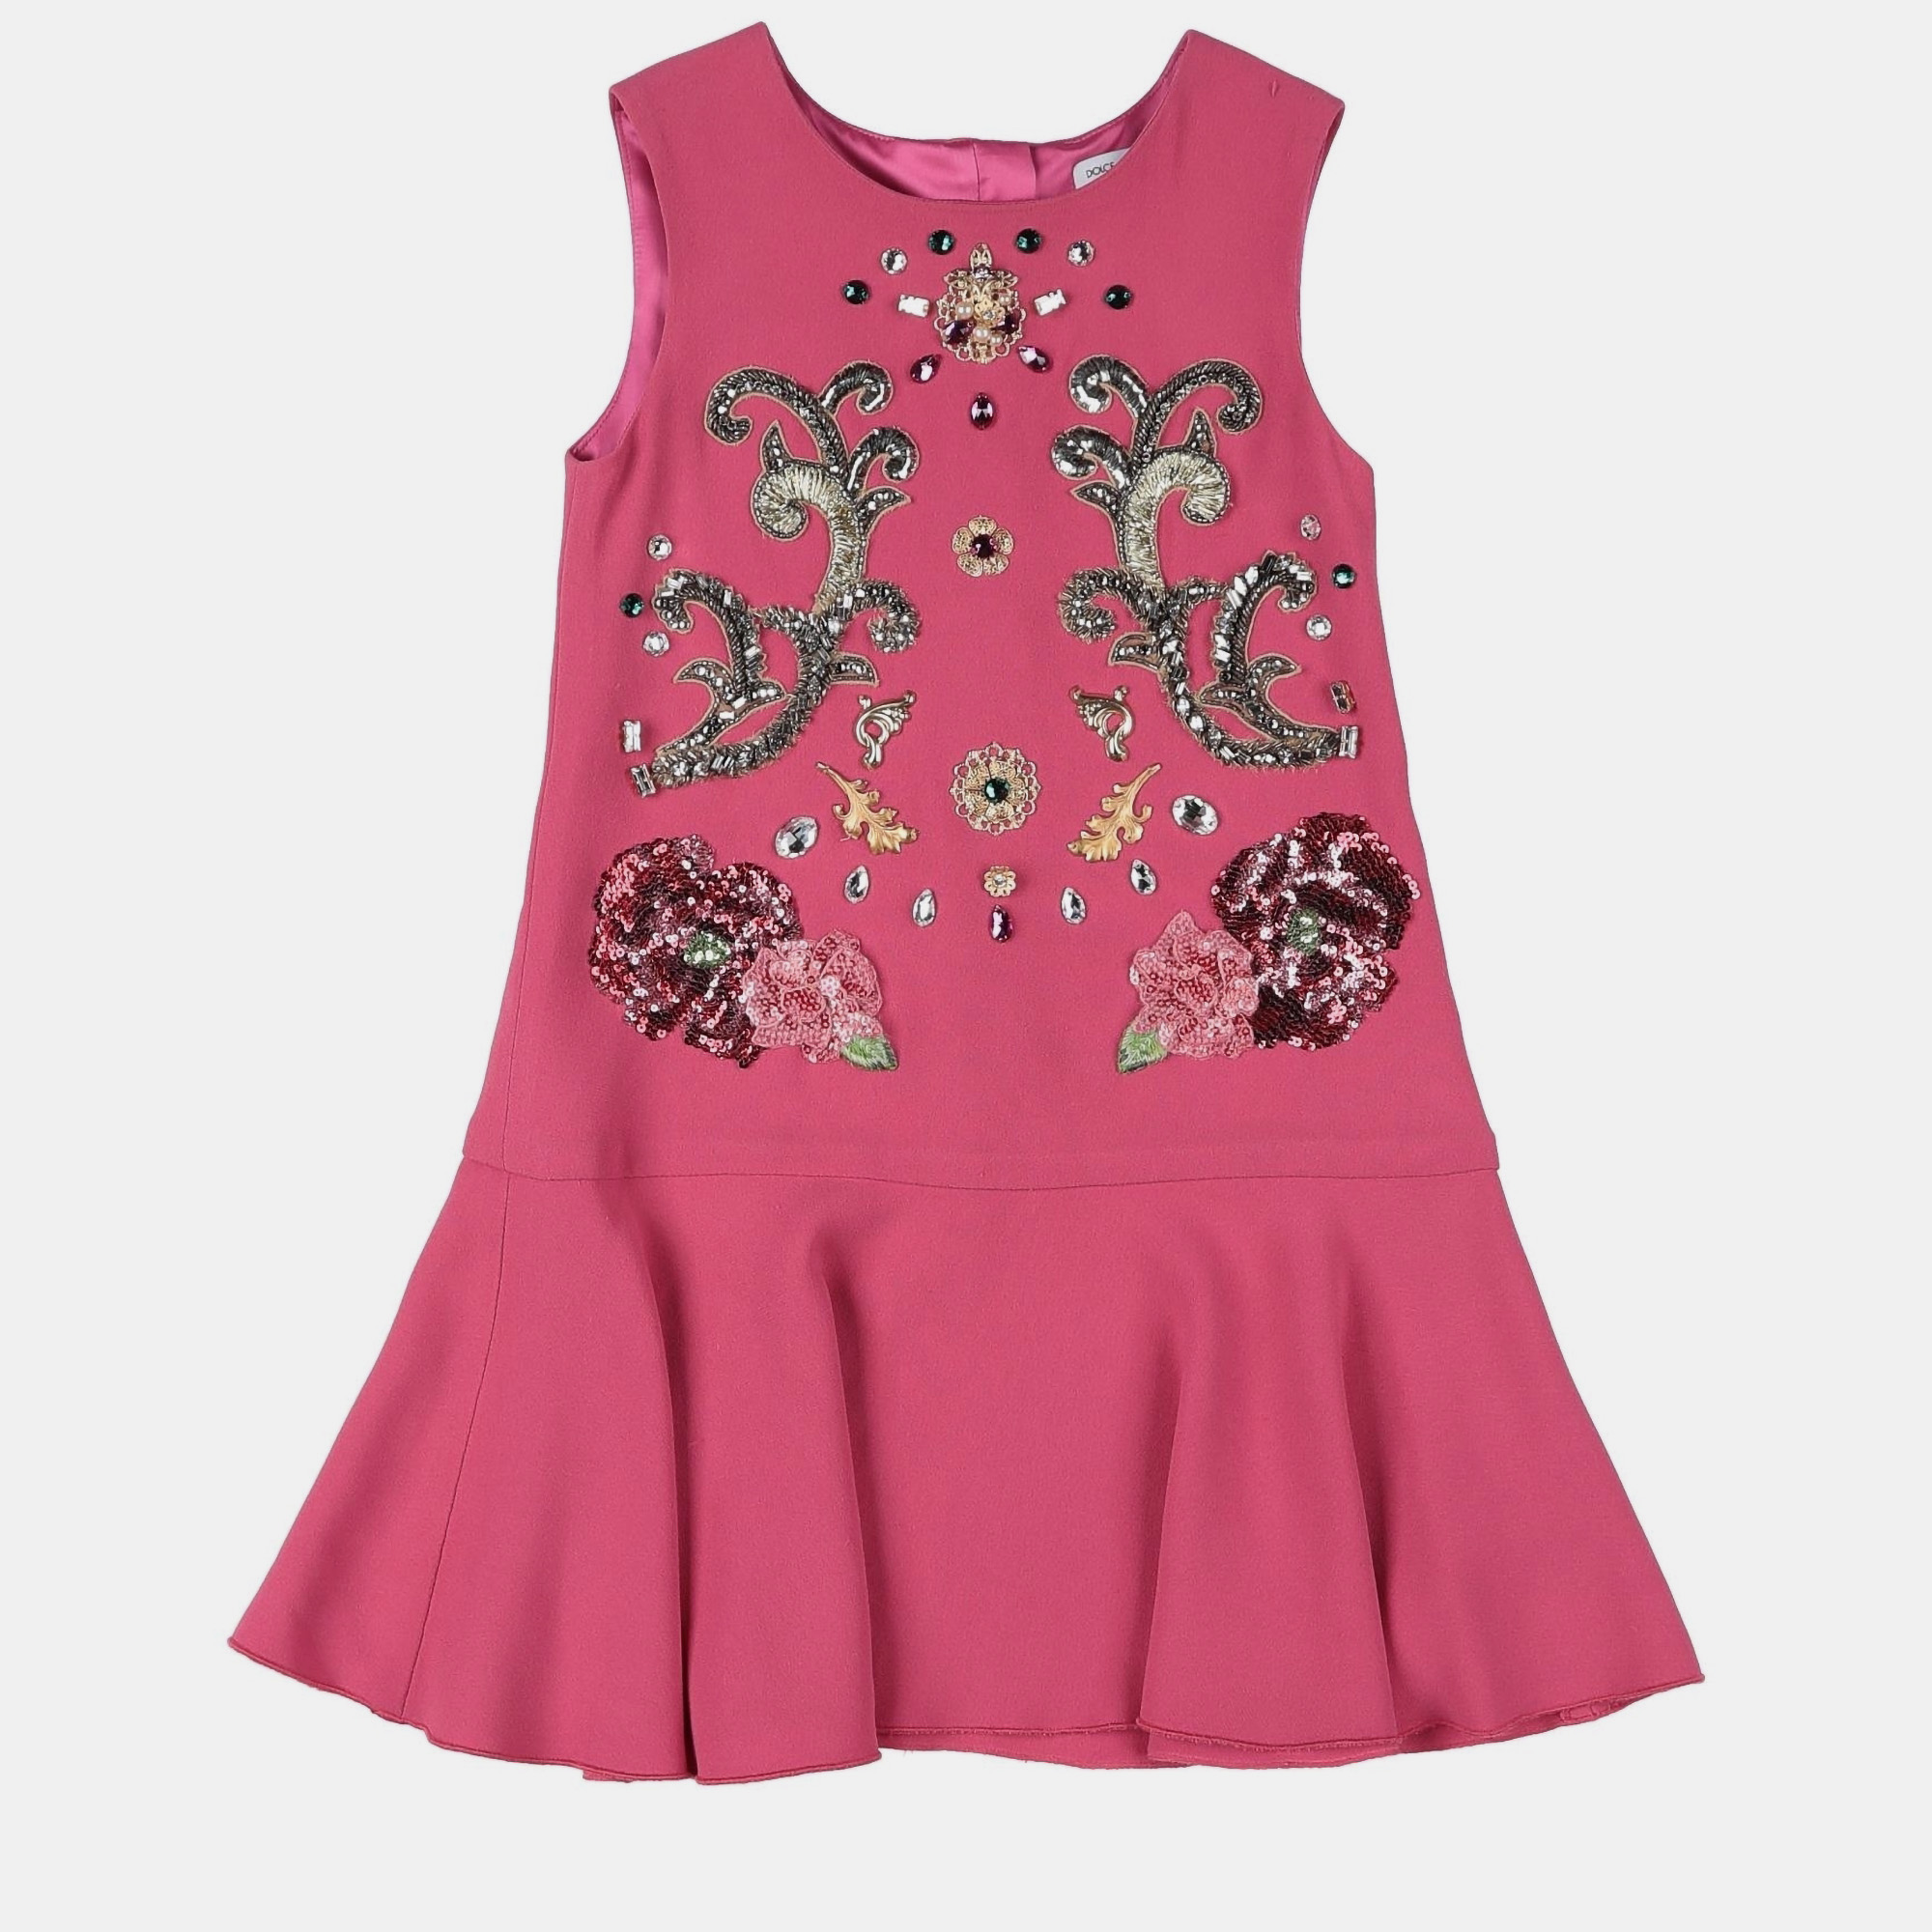 Dolce & gabbana pink crepe embellished dress size 9/10y